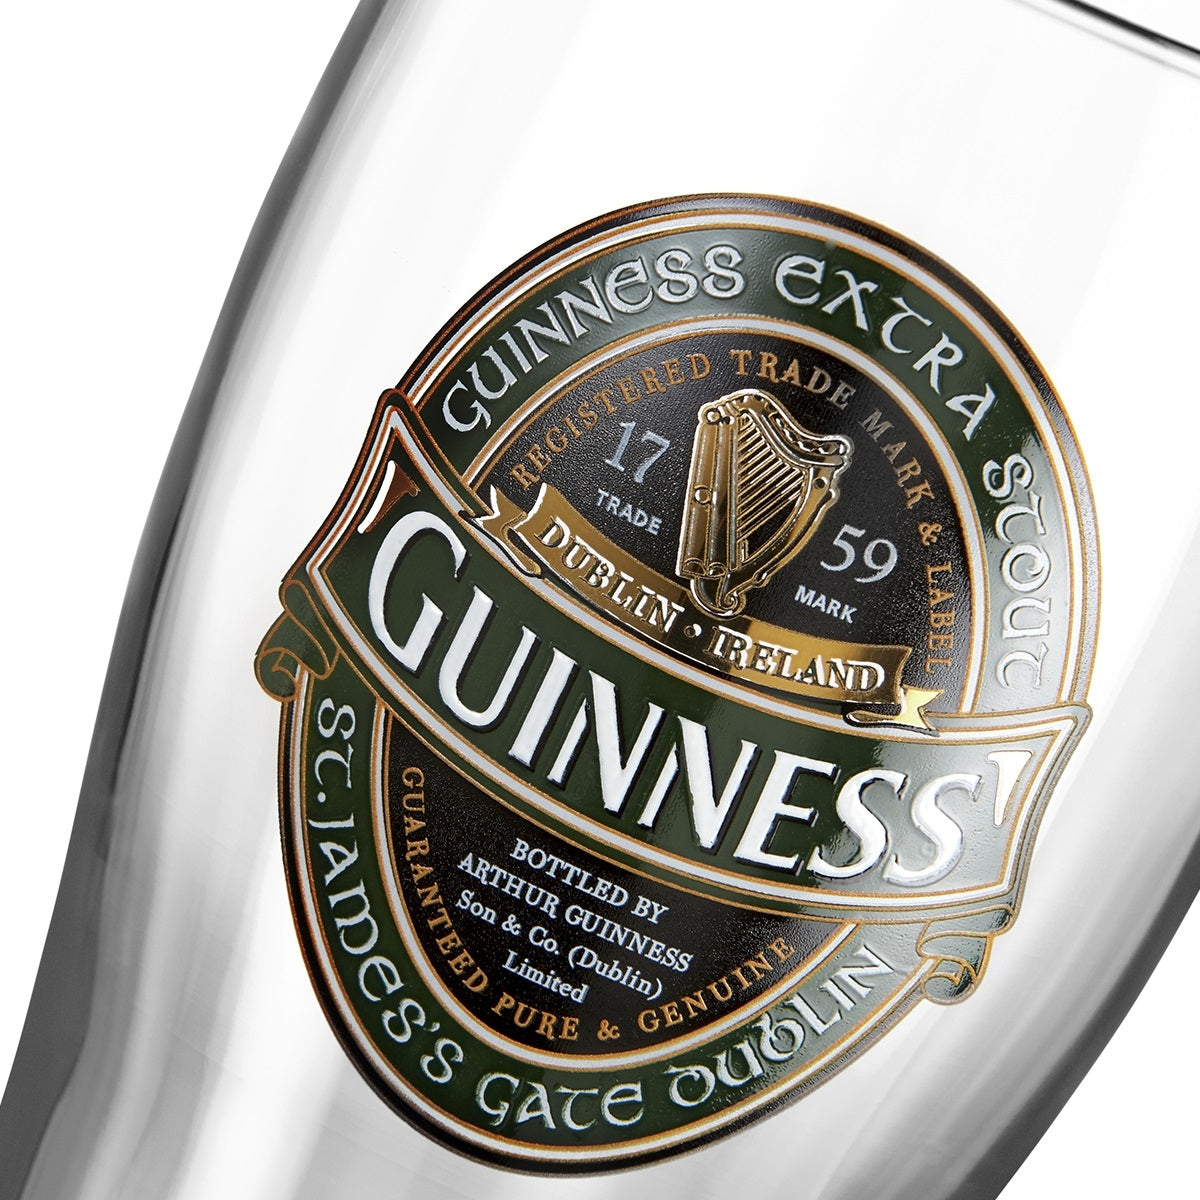 Guinness Ireland Pint Glass and Bottle Opener